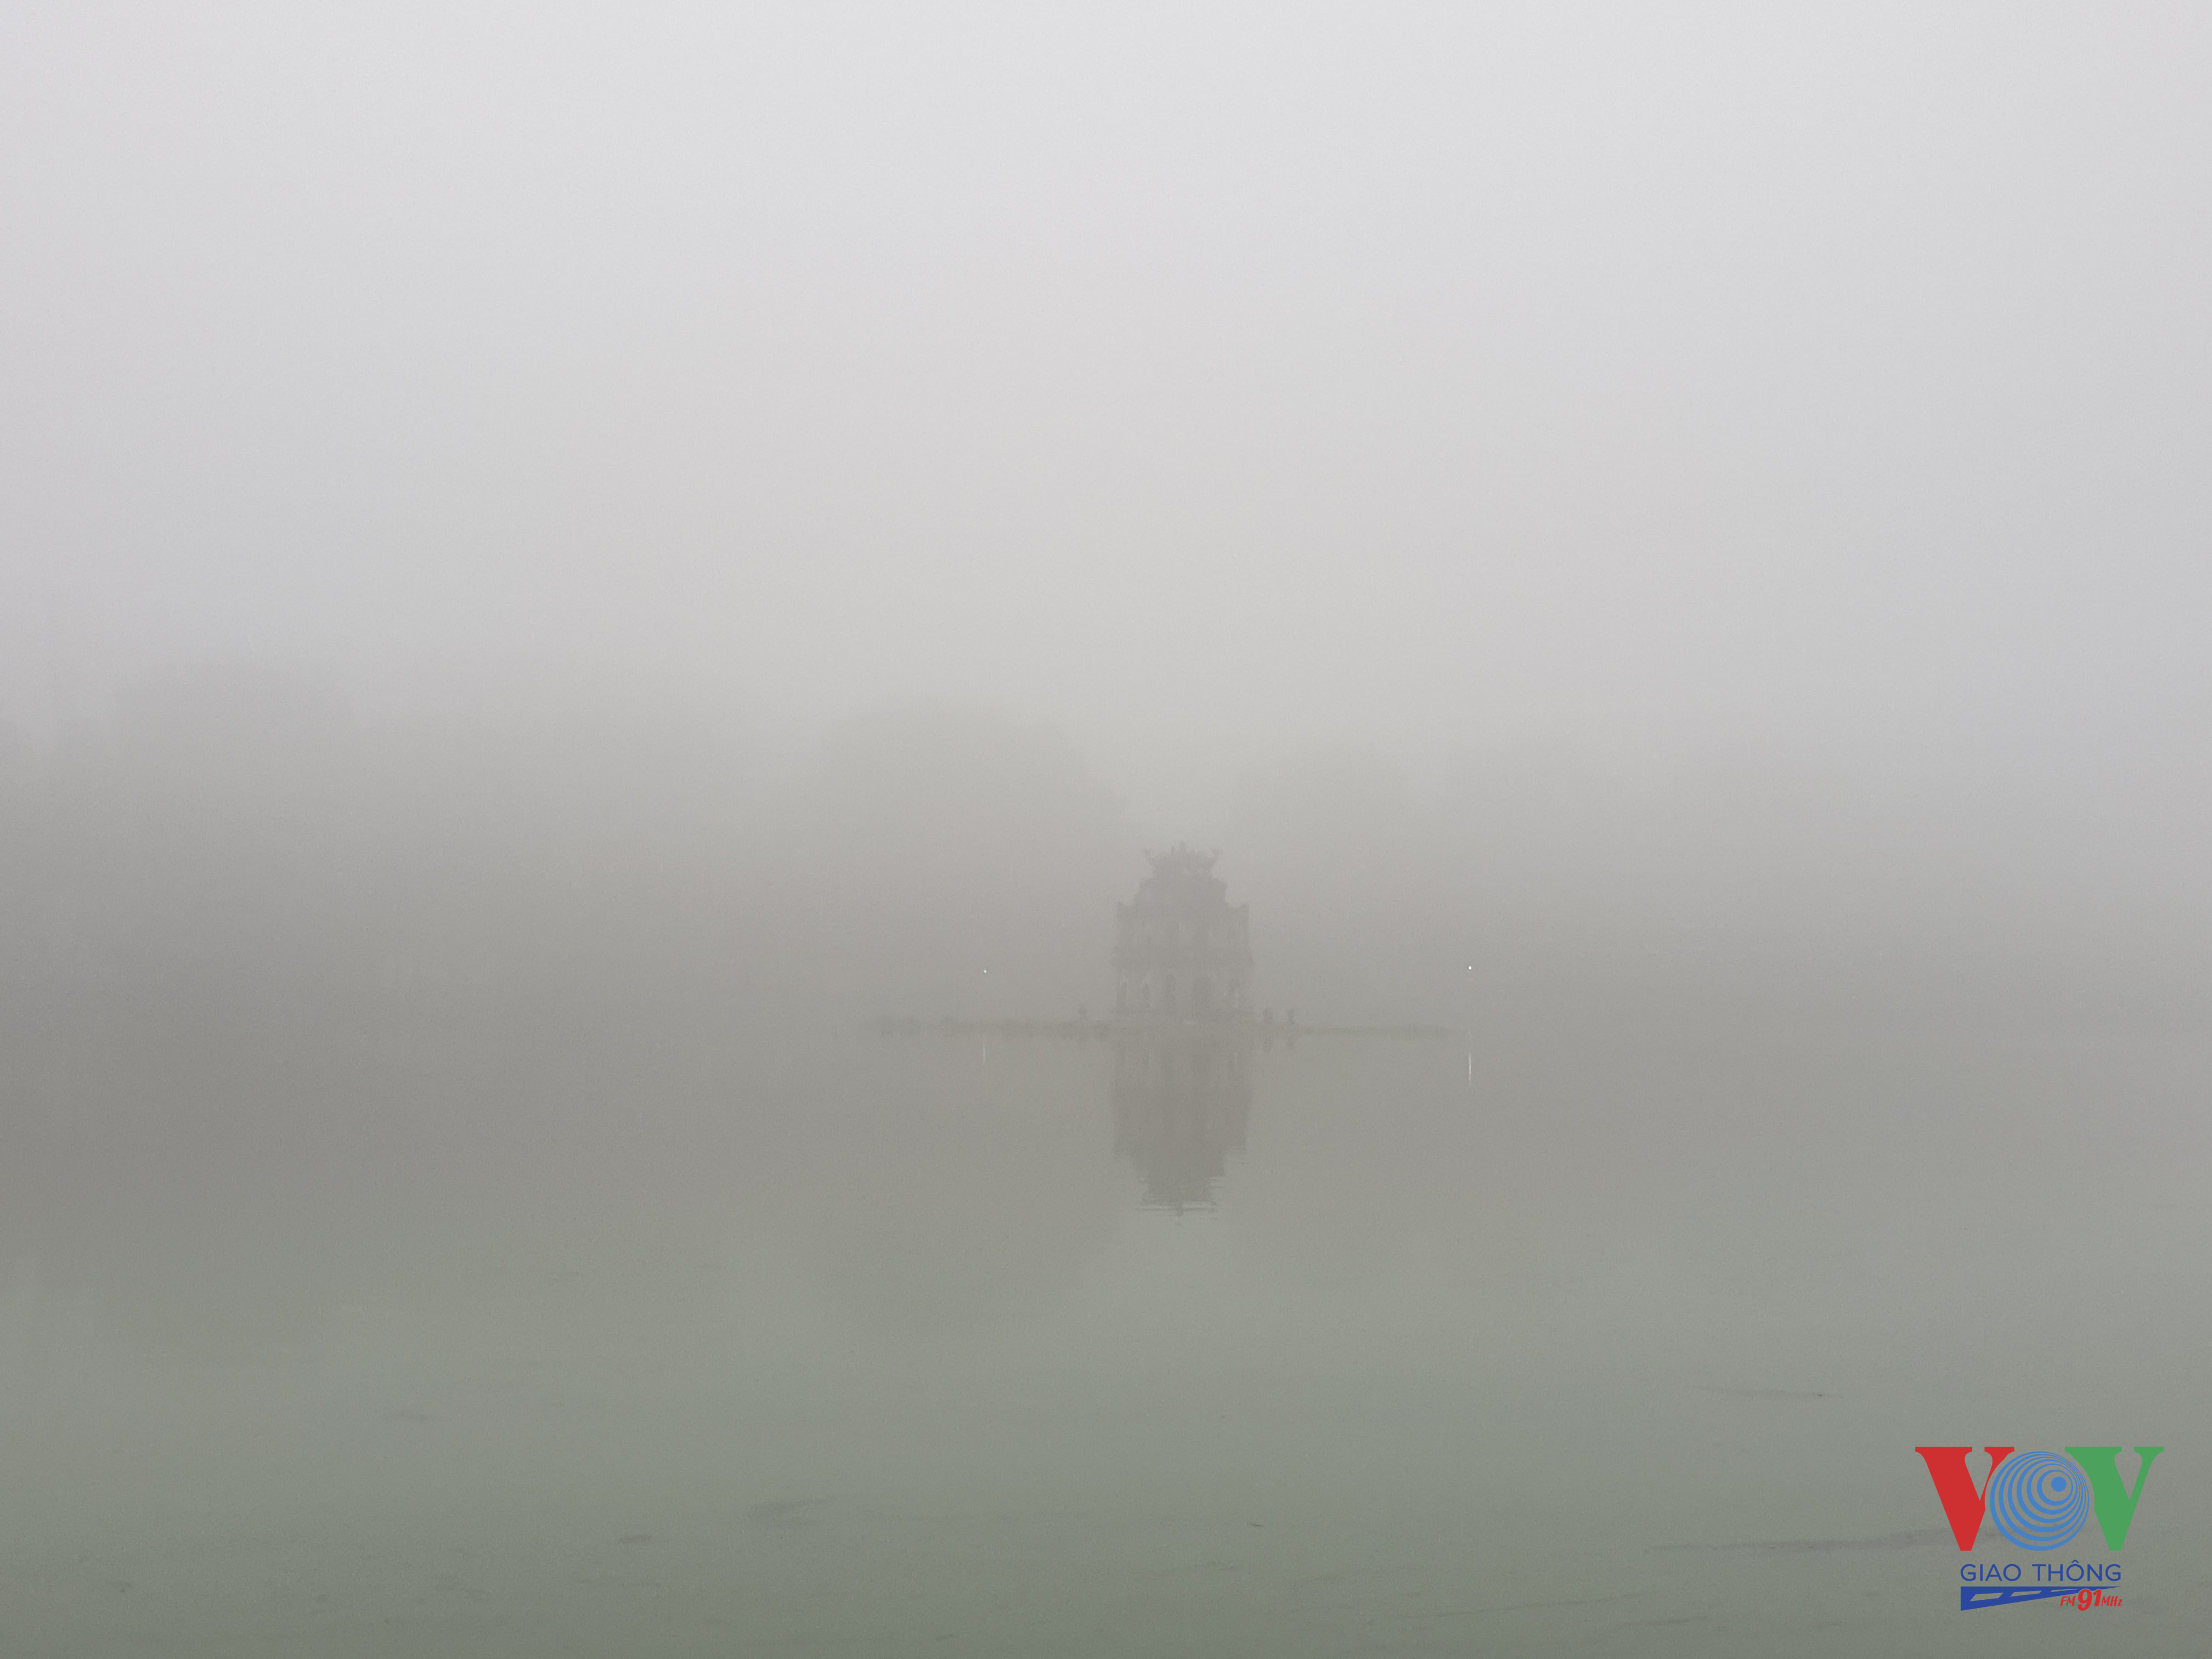 8 Hình ảnh tháp Rùa mờ mịt trong sương cũng trở thành cảm hứng sáng tác cho các nhiếp ảnh gia.